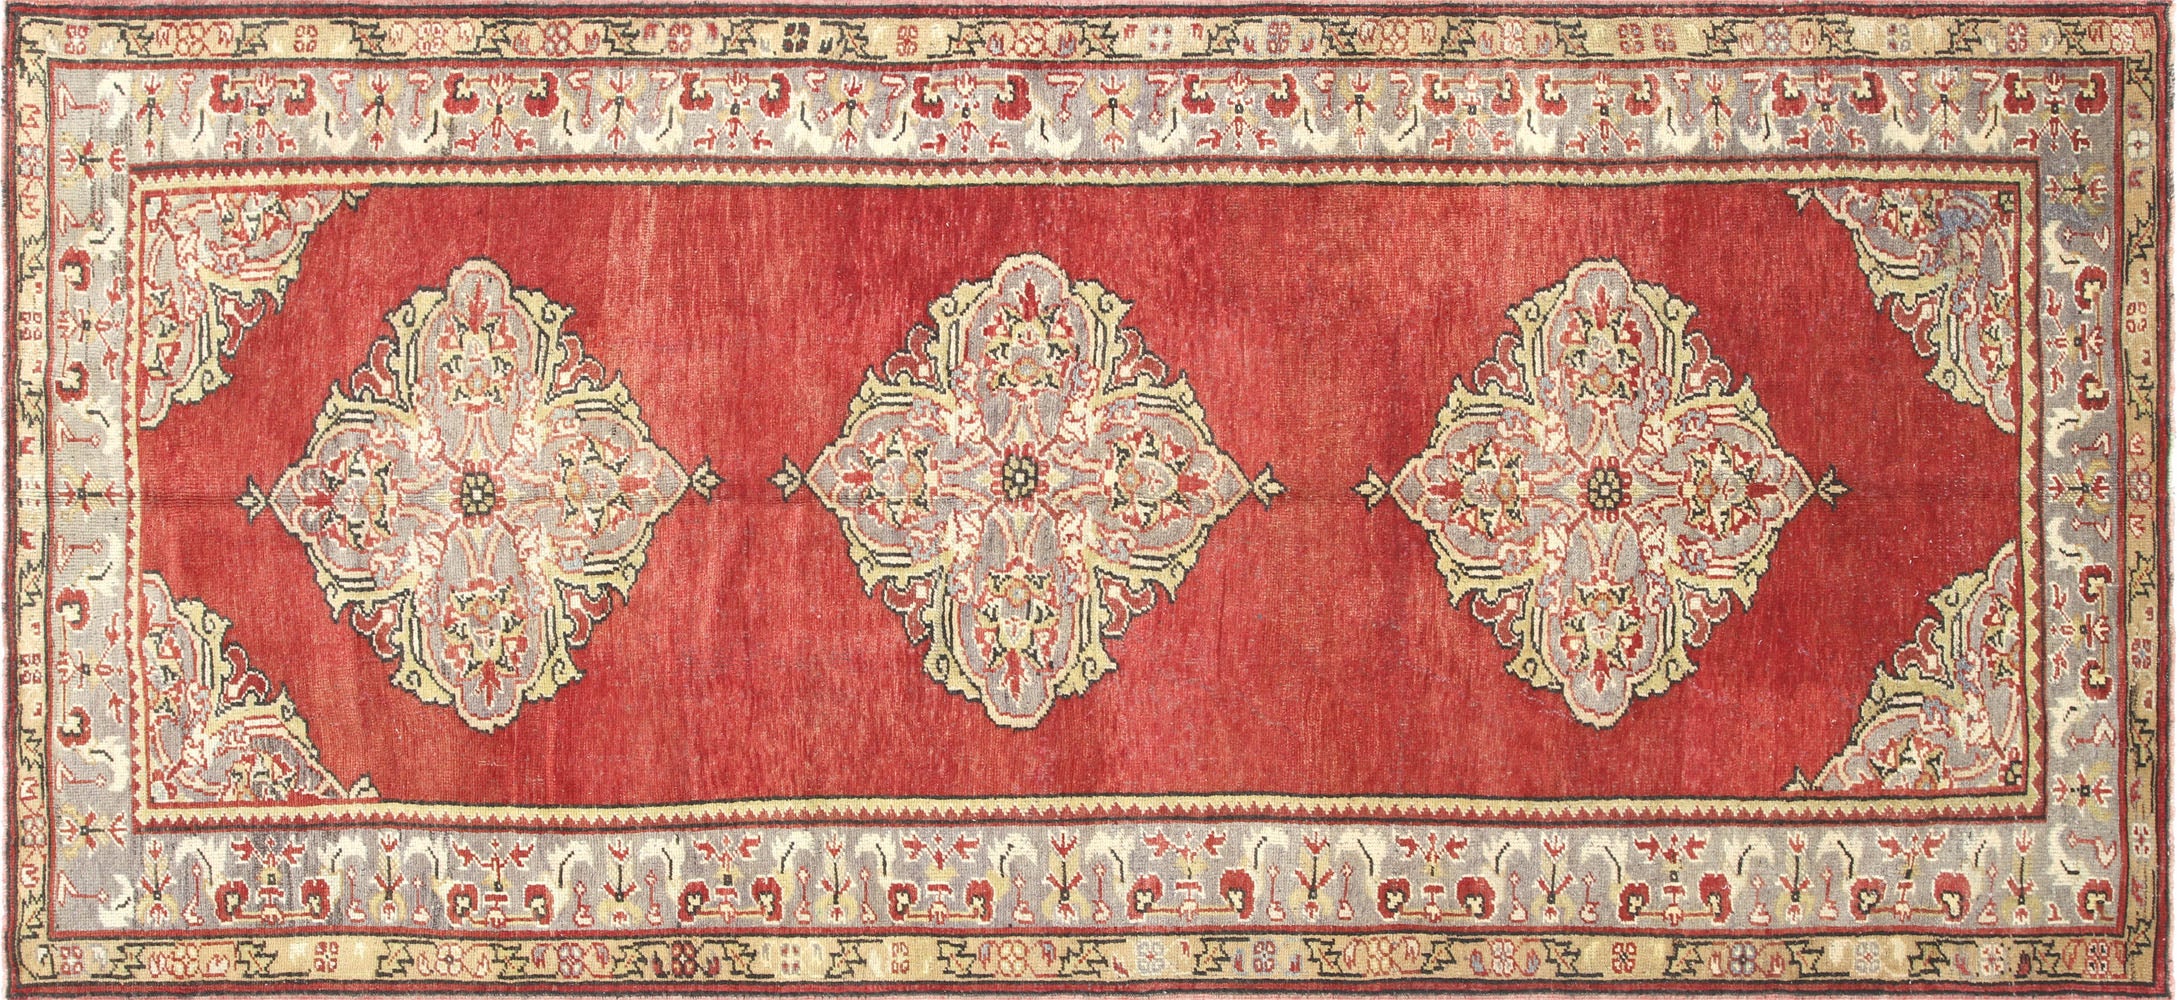 Vintage Turkish Oushak Carpet - 4'10" x 11'2"